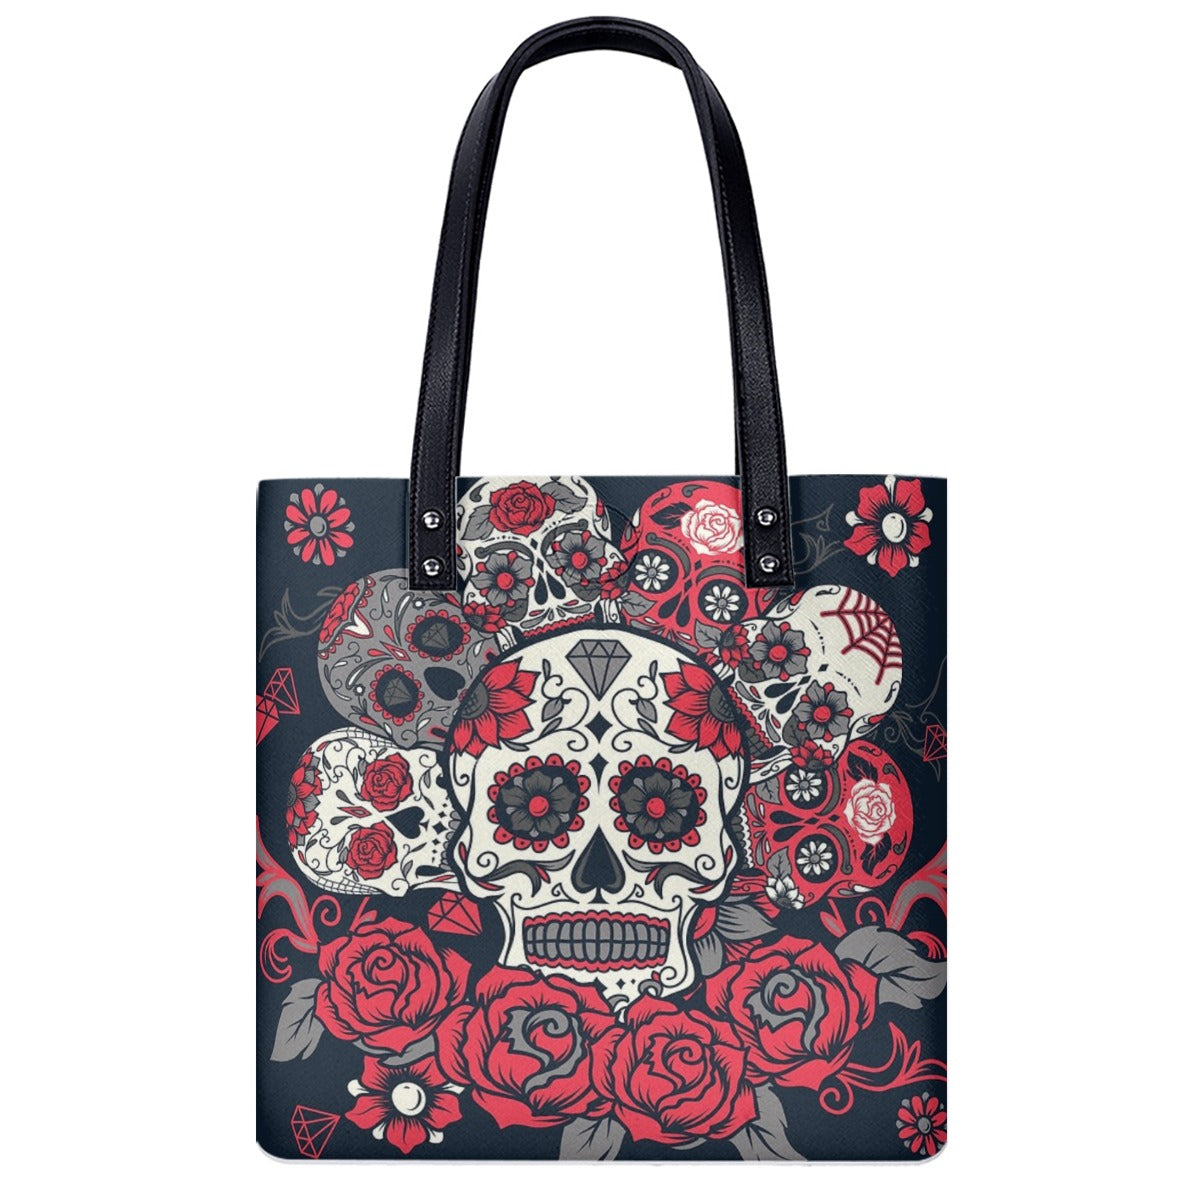 Day of the dead sugar skull PU Shoulder Bag, Dia de los muertos Mexican skeleton calaveras bag